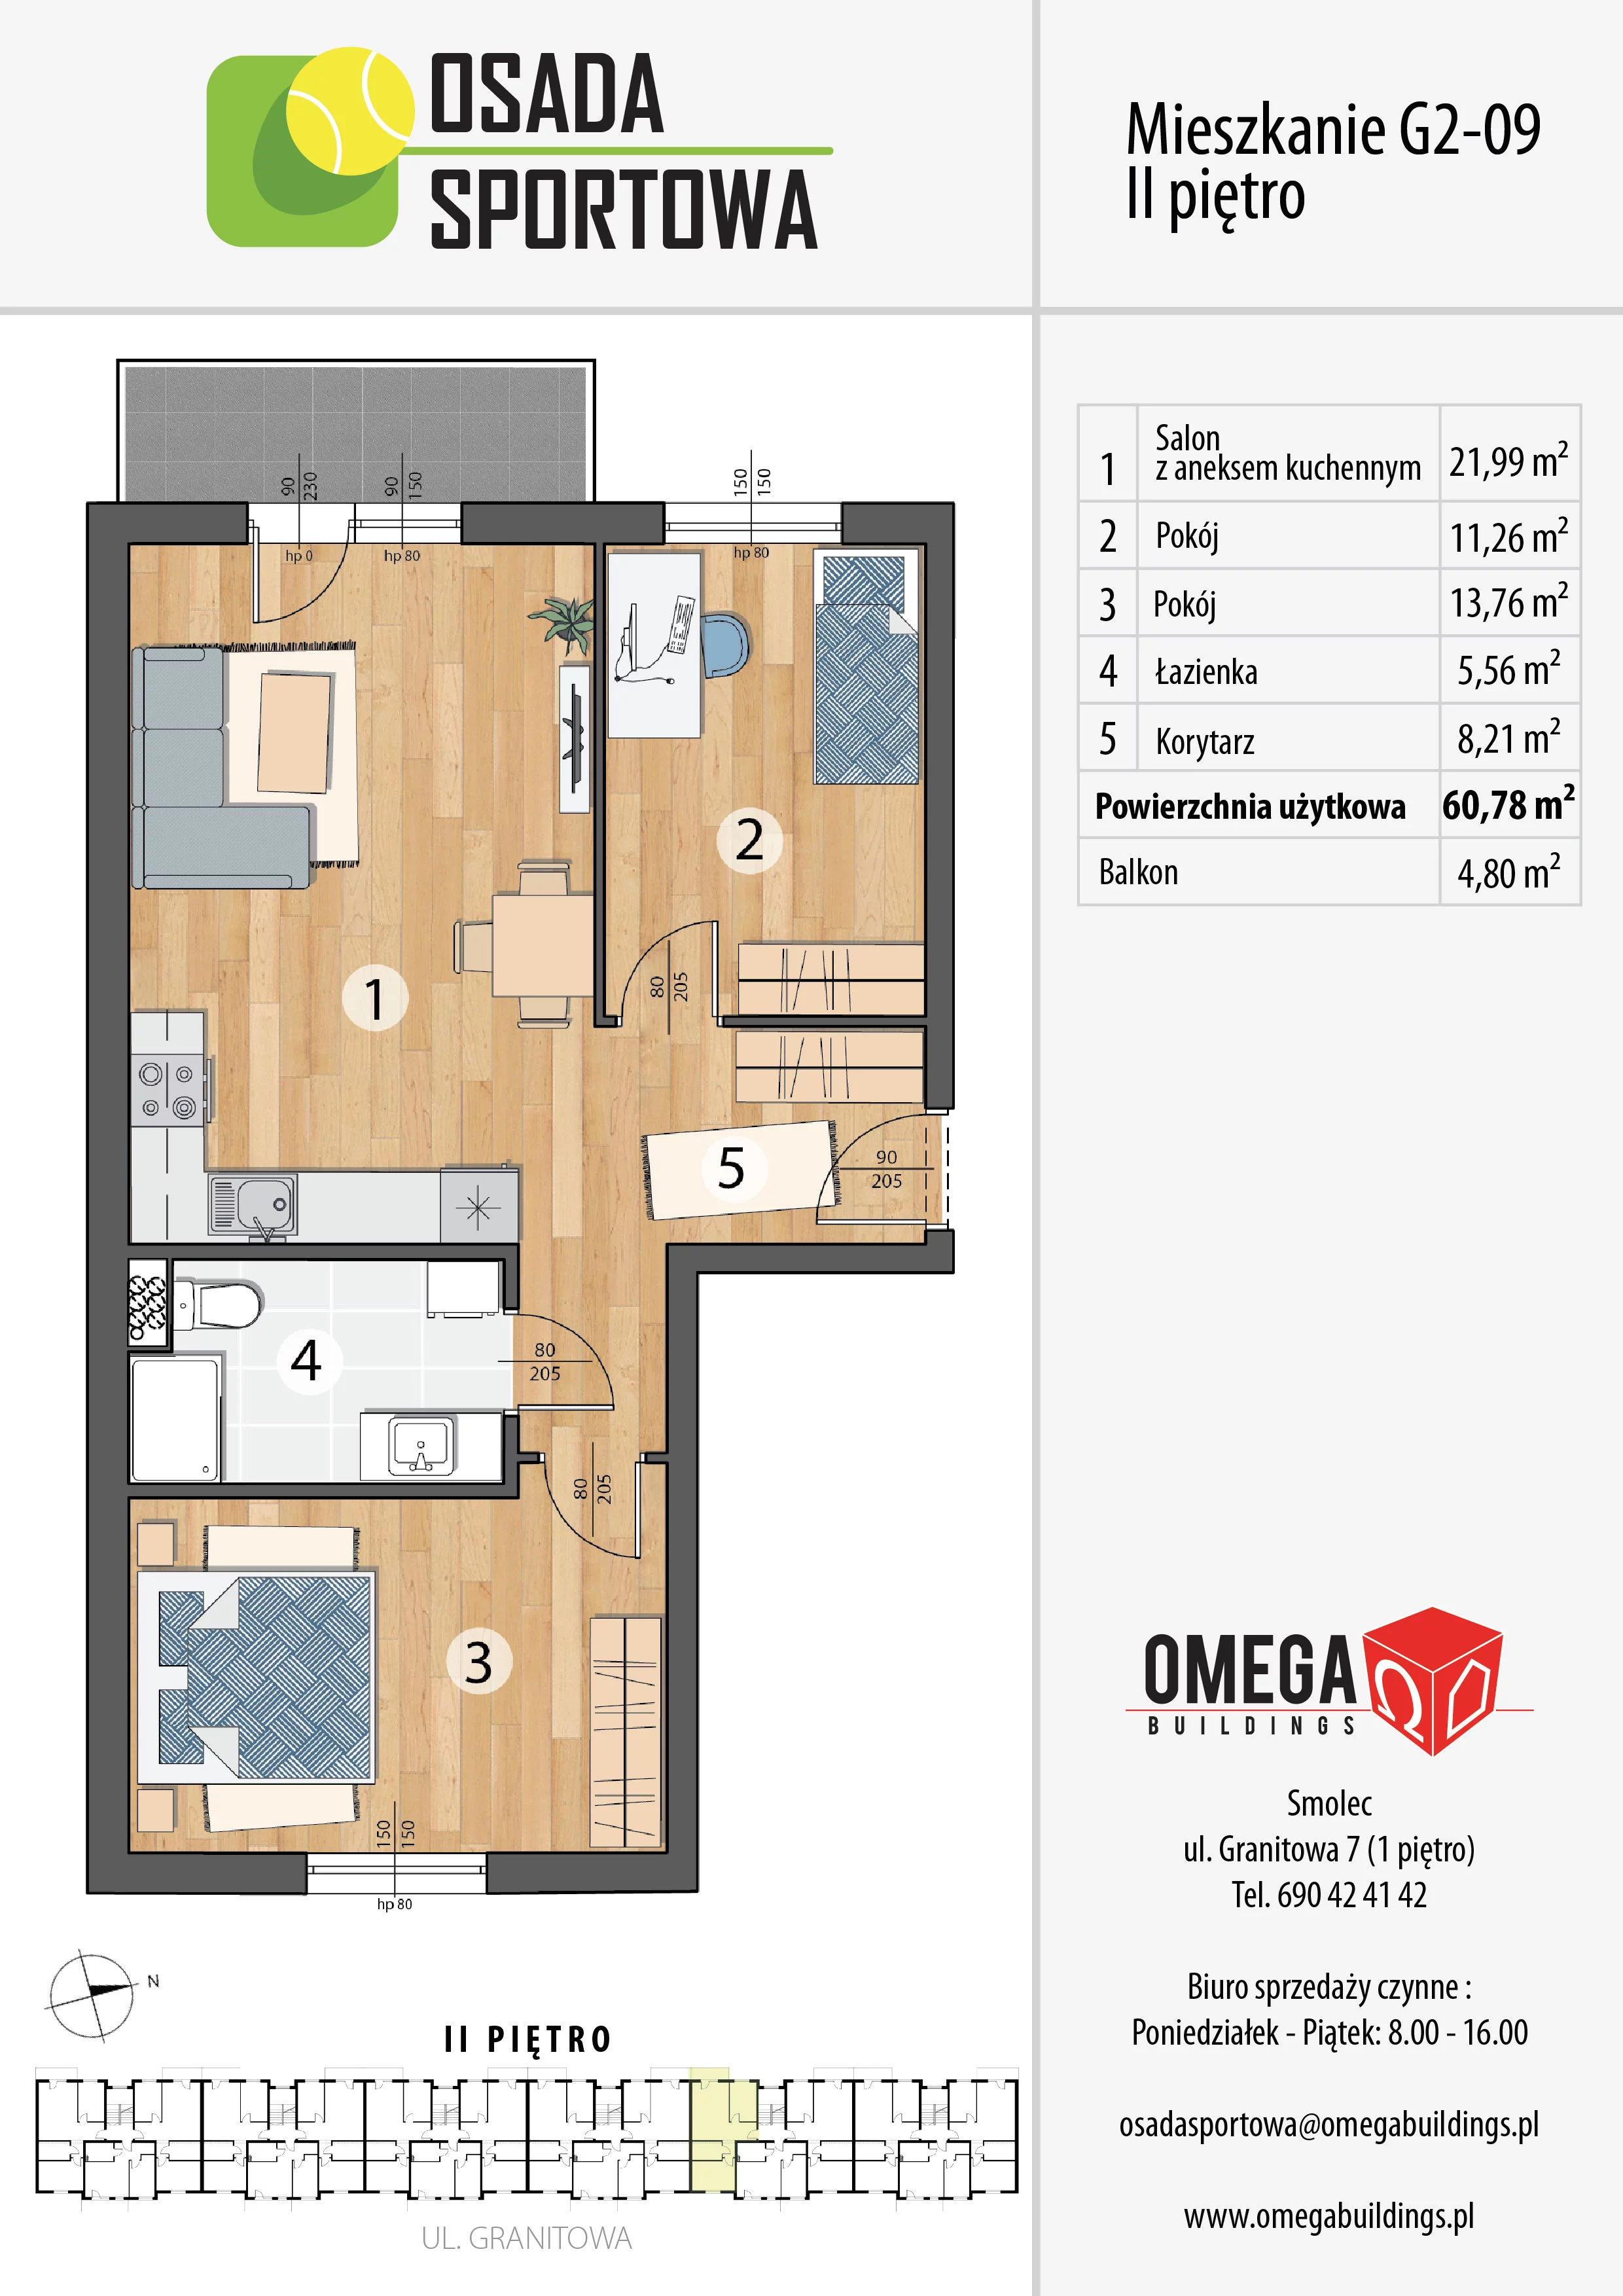 Mieszkanie 60,78 m², piętro 2, oferta nr G2-09, Osada Sportowa Budynek G, Smolec, ul. Granitowa 52-62